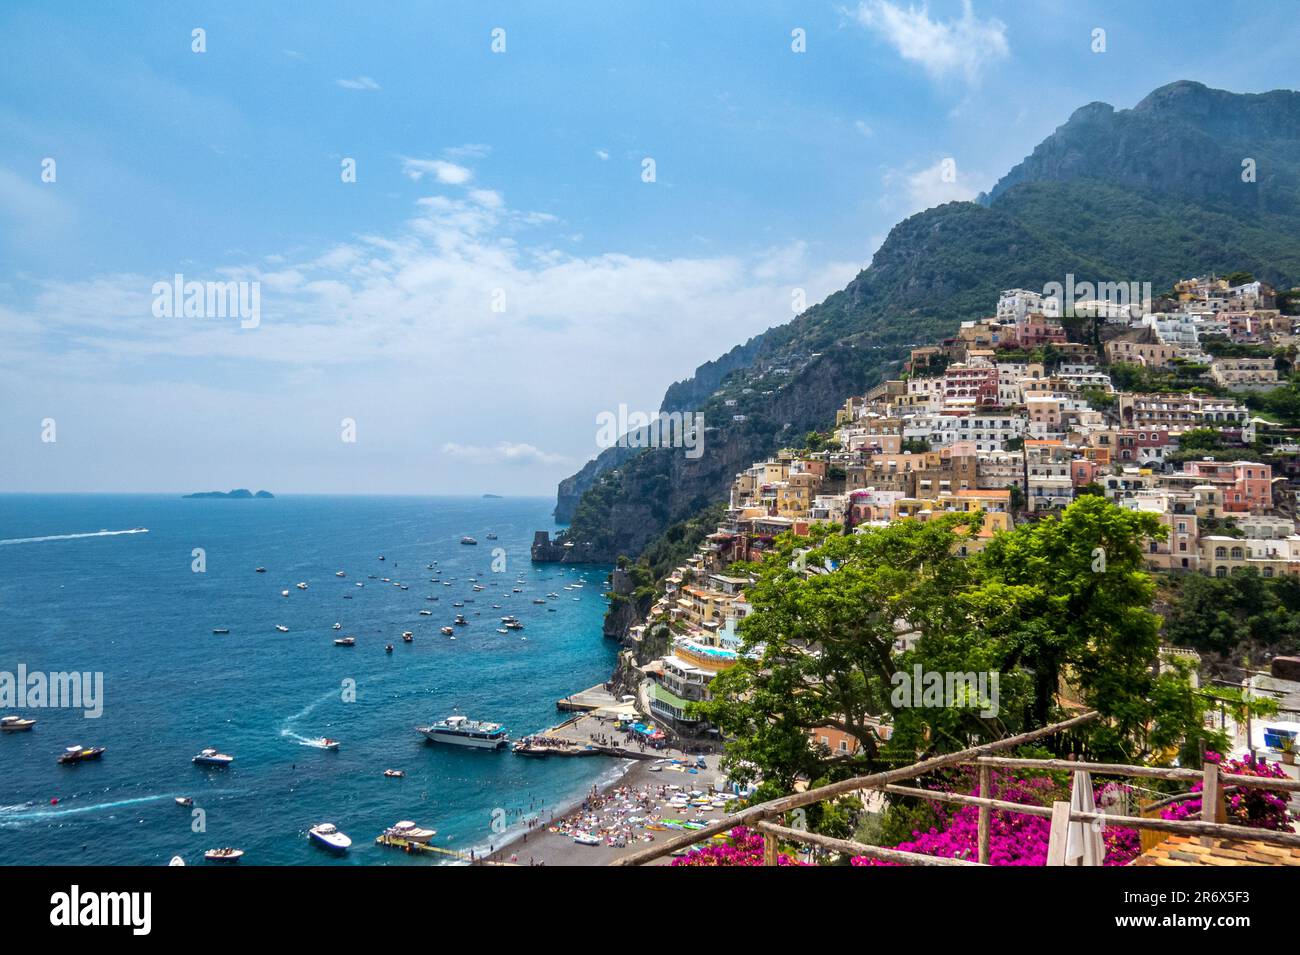 Positano, precioso pueblo de la costa amalfitana, para descubrir sus rincones, lo mejor pasear y subir a sus magníficos miradores, Italy Foto de stock